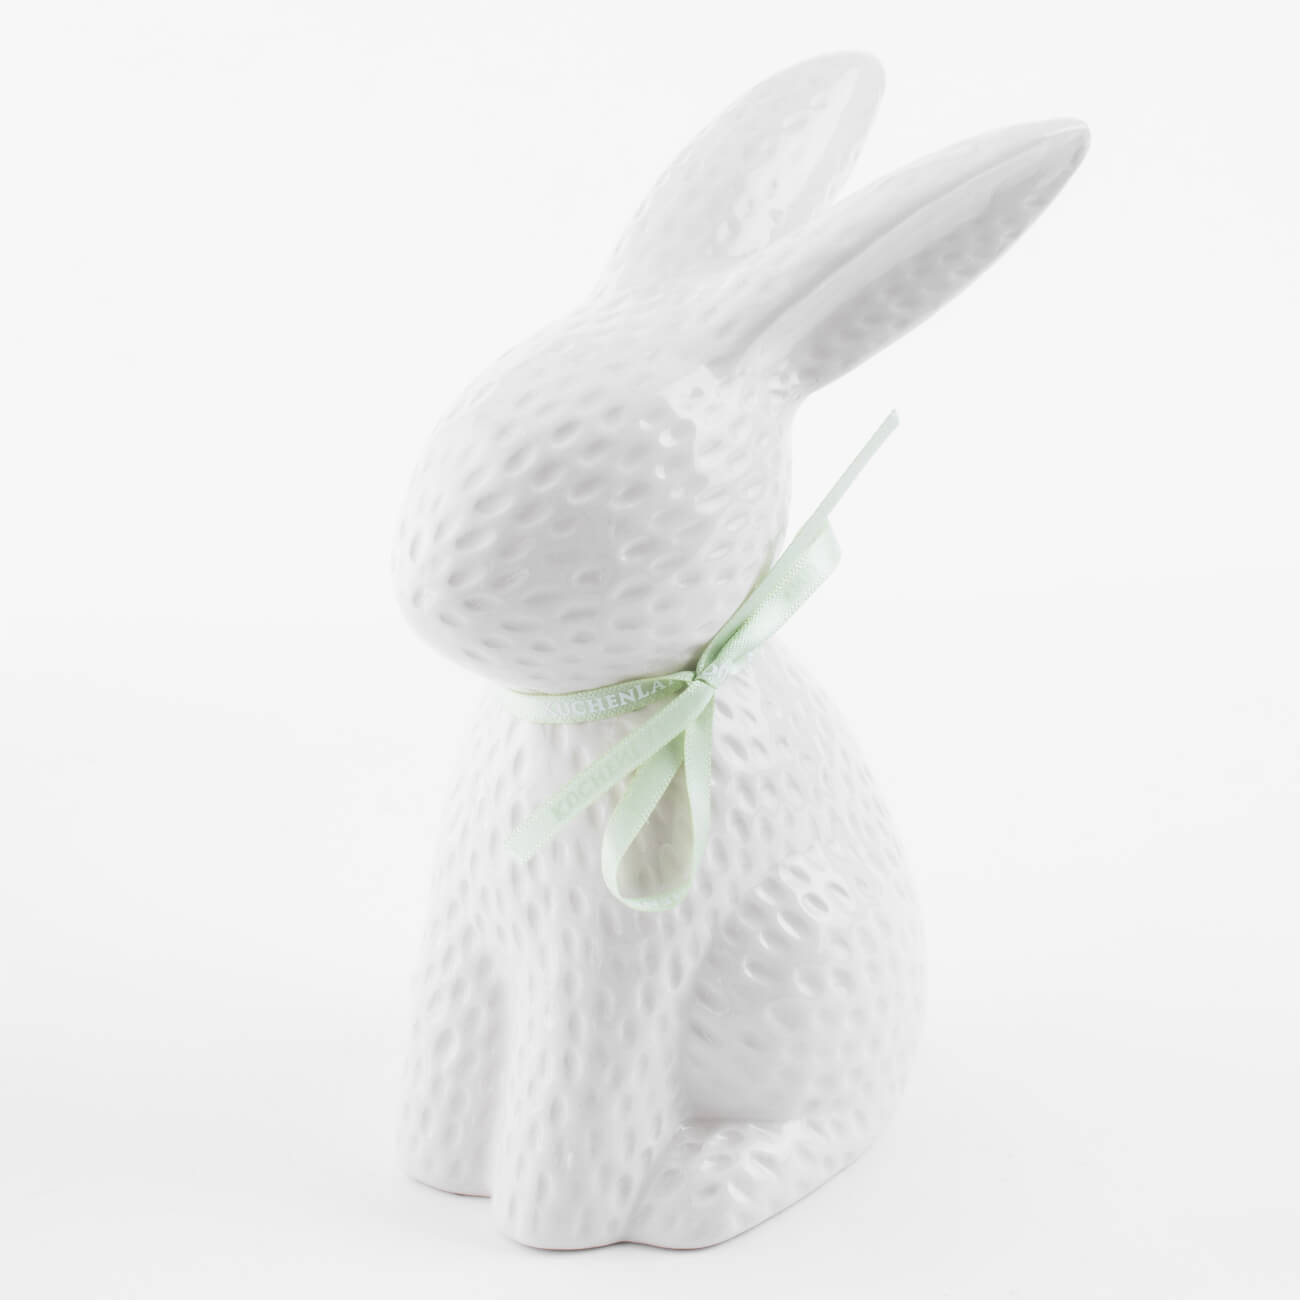 Статуэтка, 18 см, керамика, молочная Кролик сидит, Easter blooming статуэтка 23 см керамика серая кролик с тюльпанами pure easter